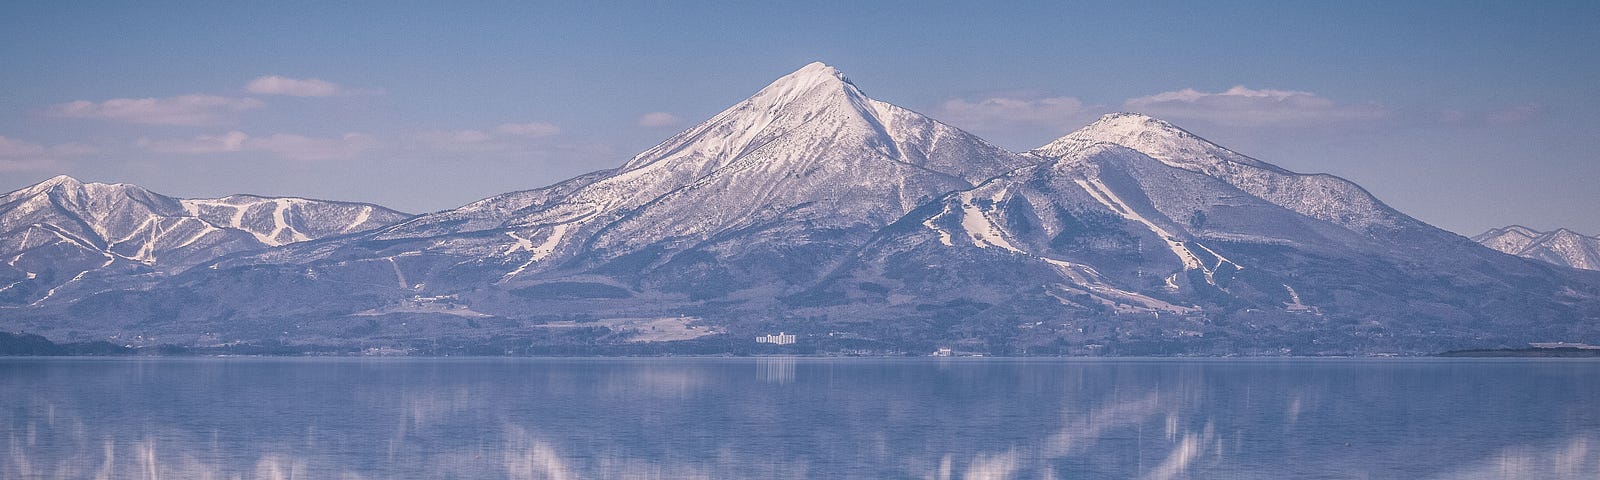 Snow-capped Mount Bandai reflected in the still waters of Lake Inawashiro, Fukushima.